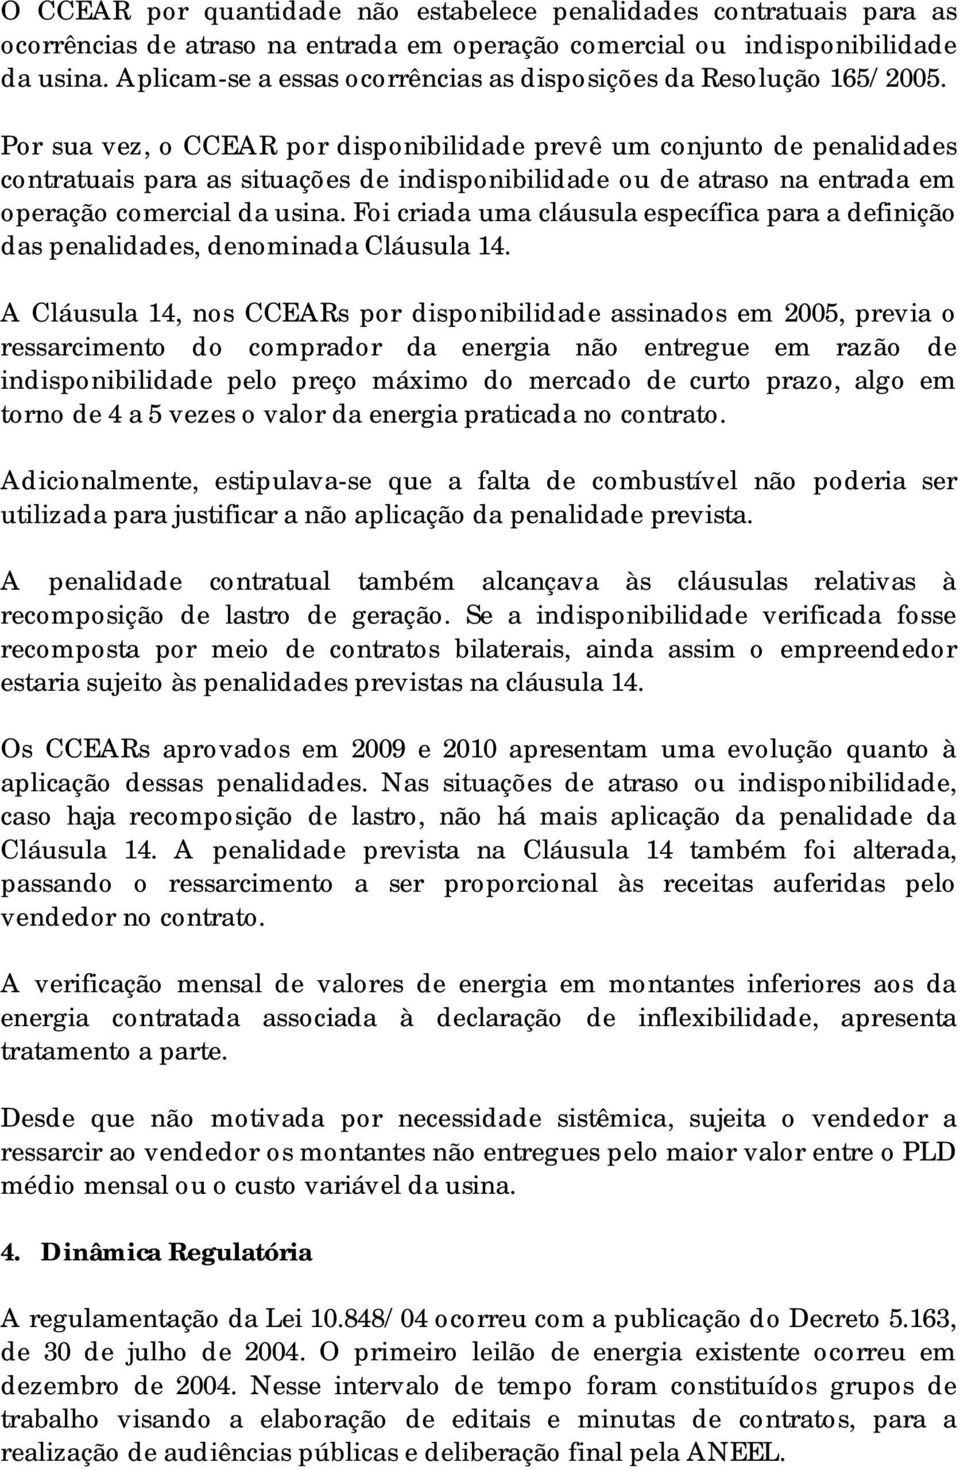 Por sua vez, o CCEAR por disponibilidade prevê um conjunto de penalidades contratuais para as situações de indisponibilidade ou de atraso na entrada em operação comercial da usina.